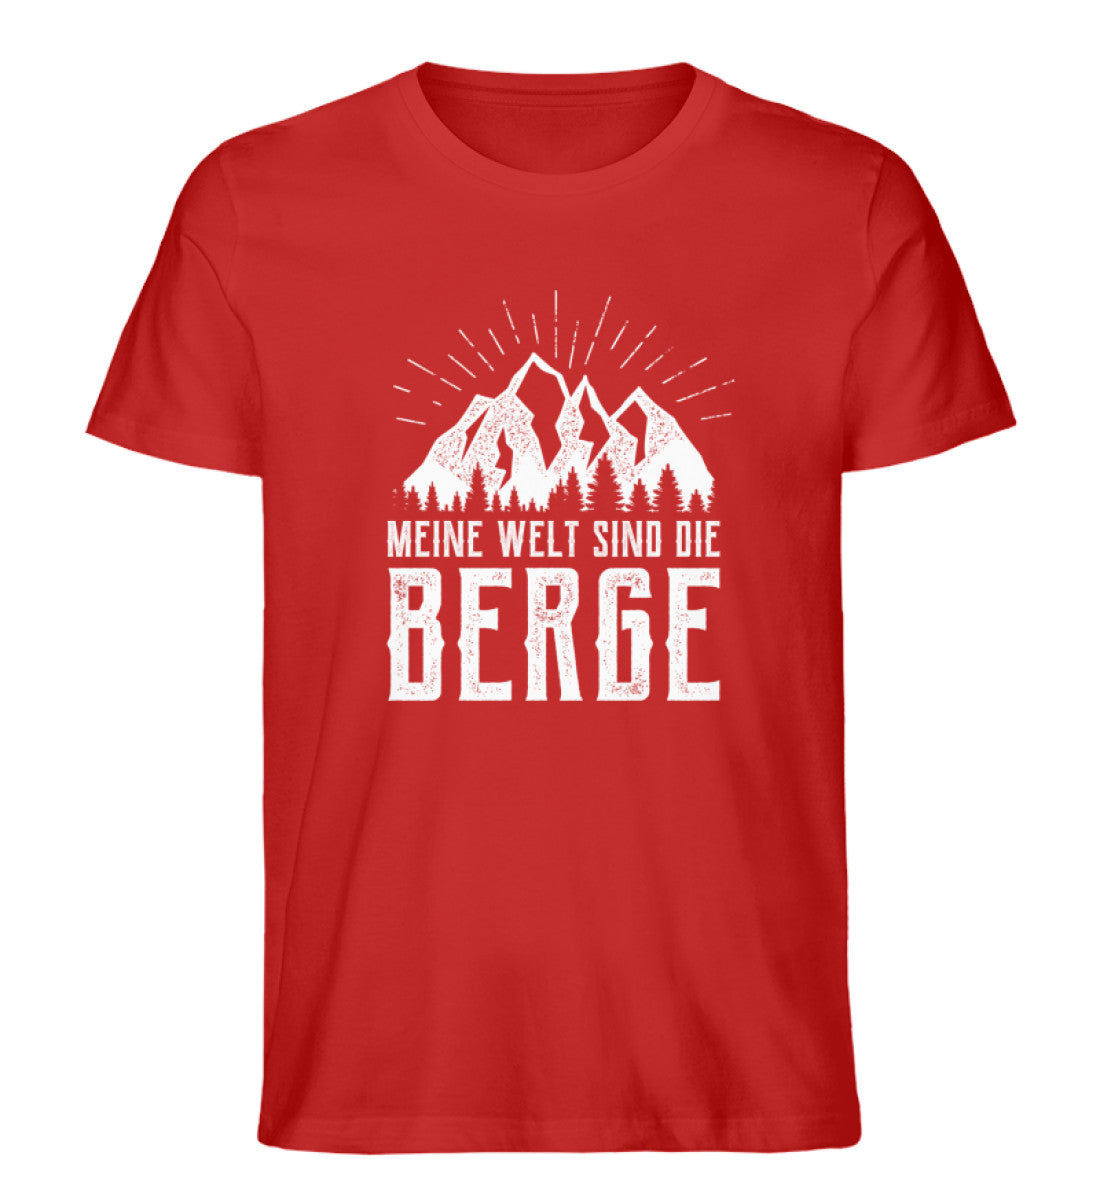 Meine Welt sind die Berge - Herren Organic T-Shirt berge Rot